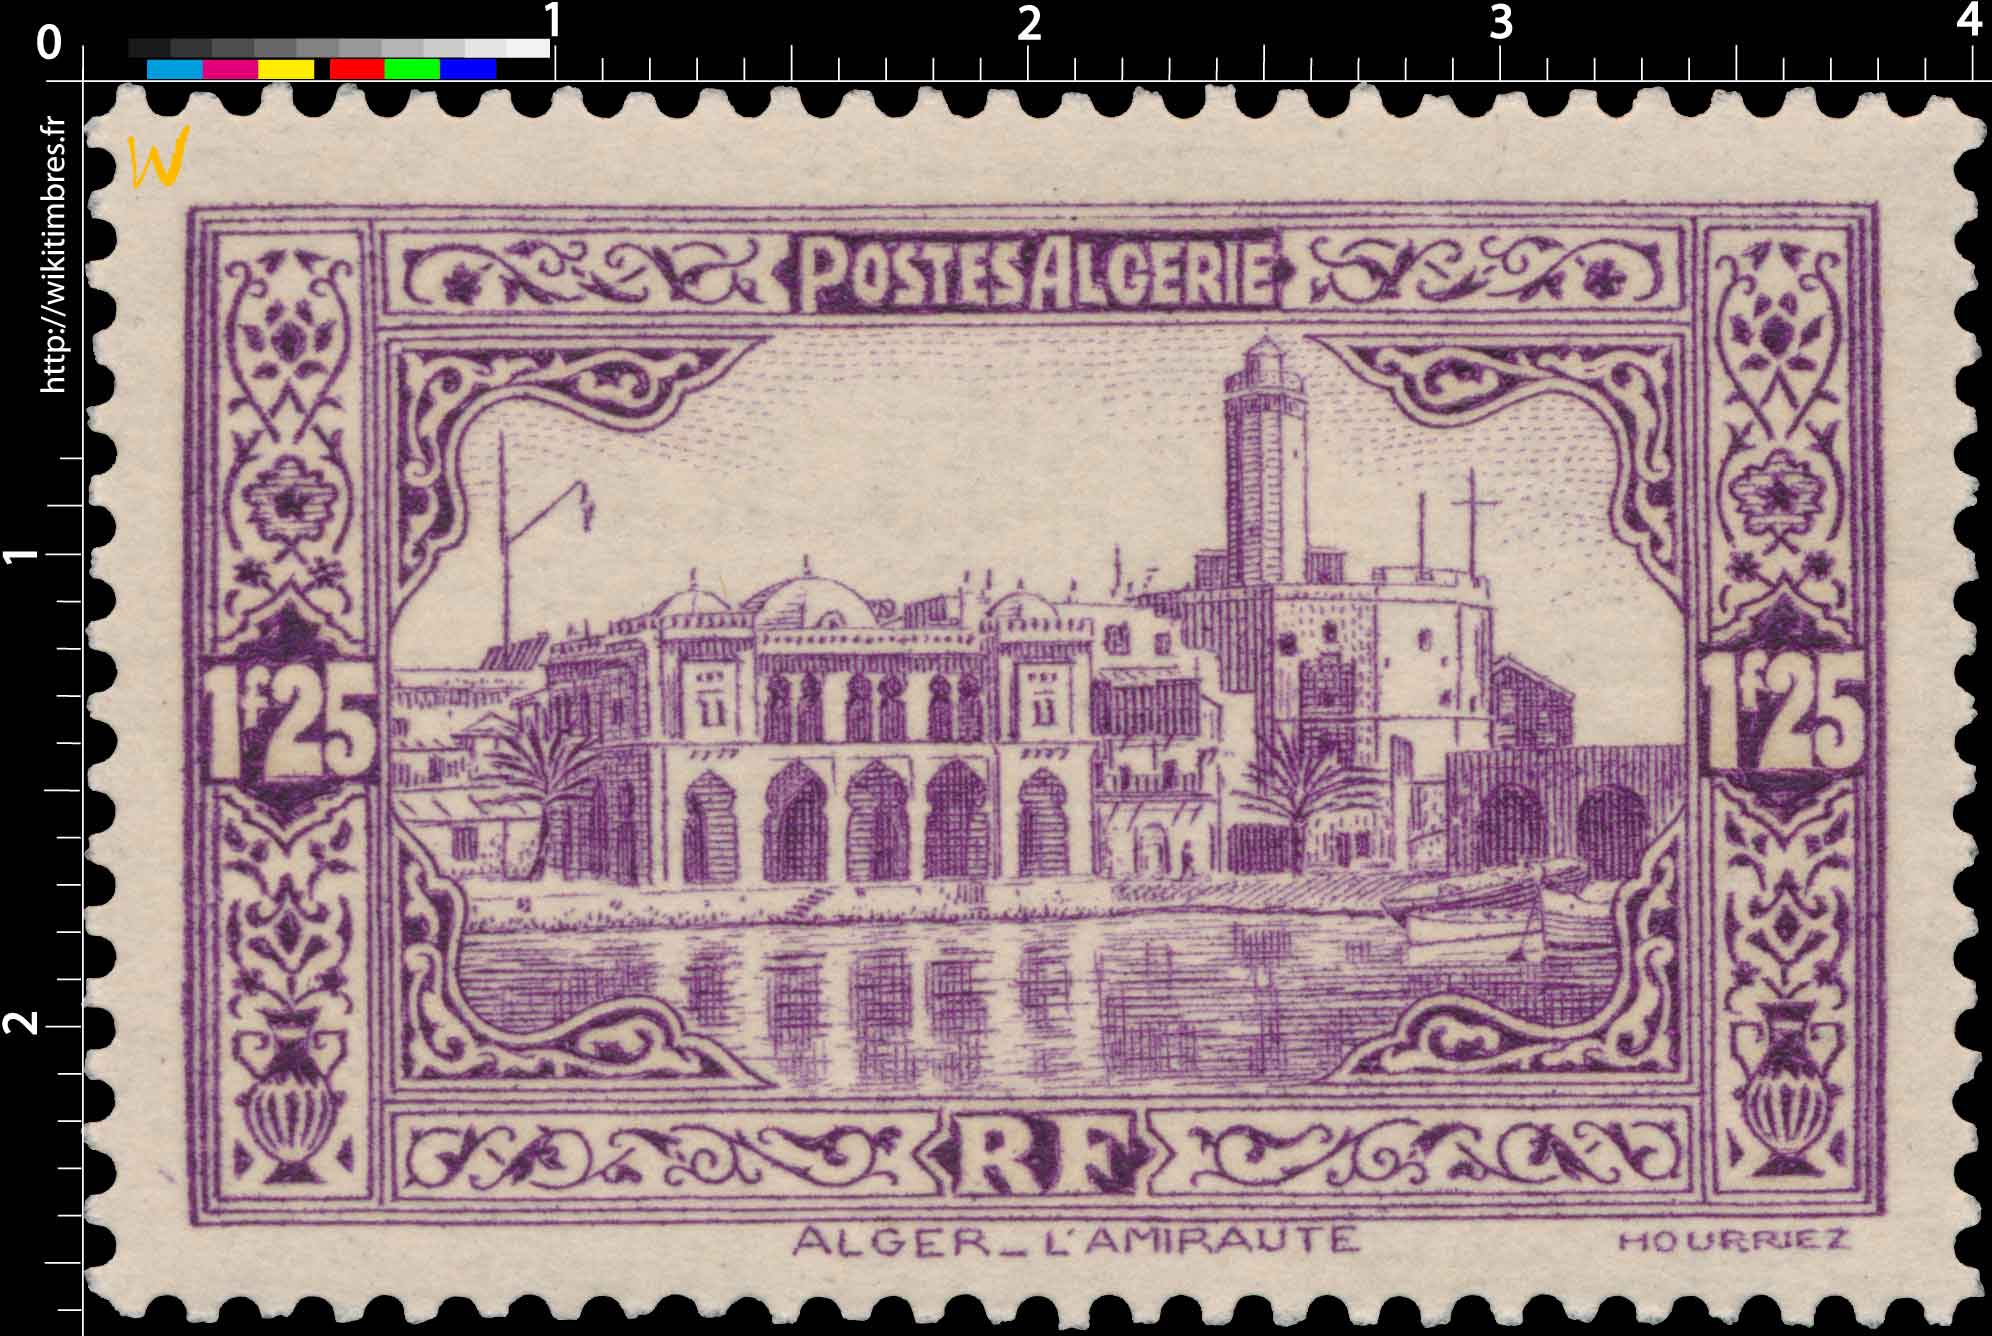 Algérie - Alger L'Amirauté 